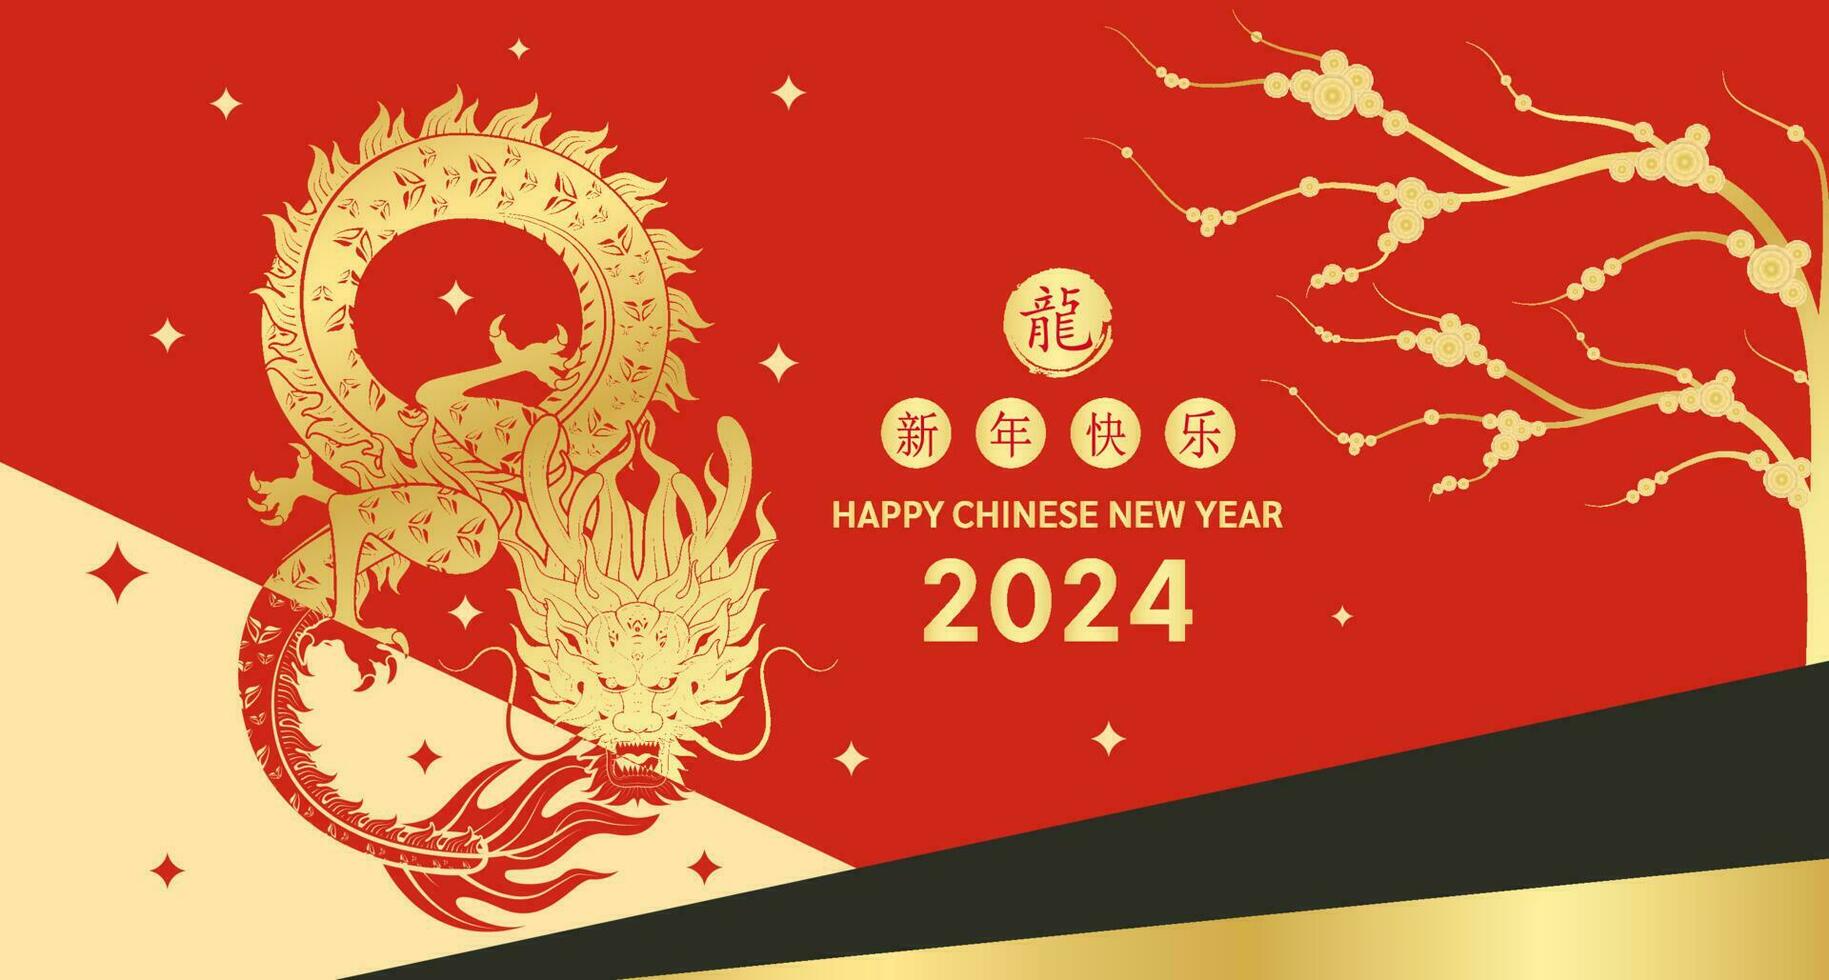 Lycklig kinesisk ny år 2024. kinesisk drake guld zodiaken tecken siffra 8 oändlighet på röd bakgrund för kort design. Kina lunar kalender djur. översättning Lycklig ny år 2024. vektor eps10.